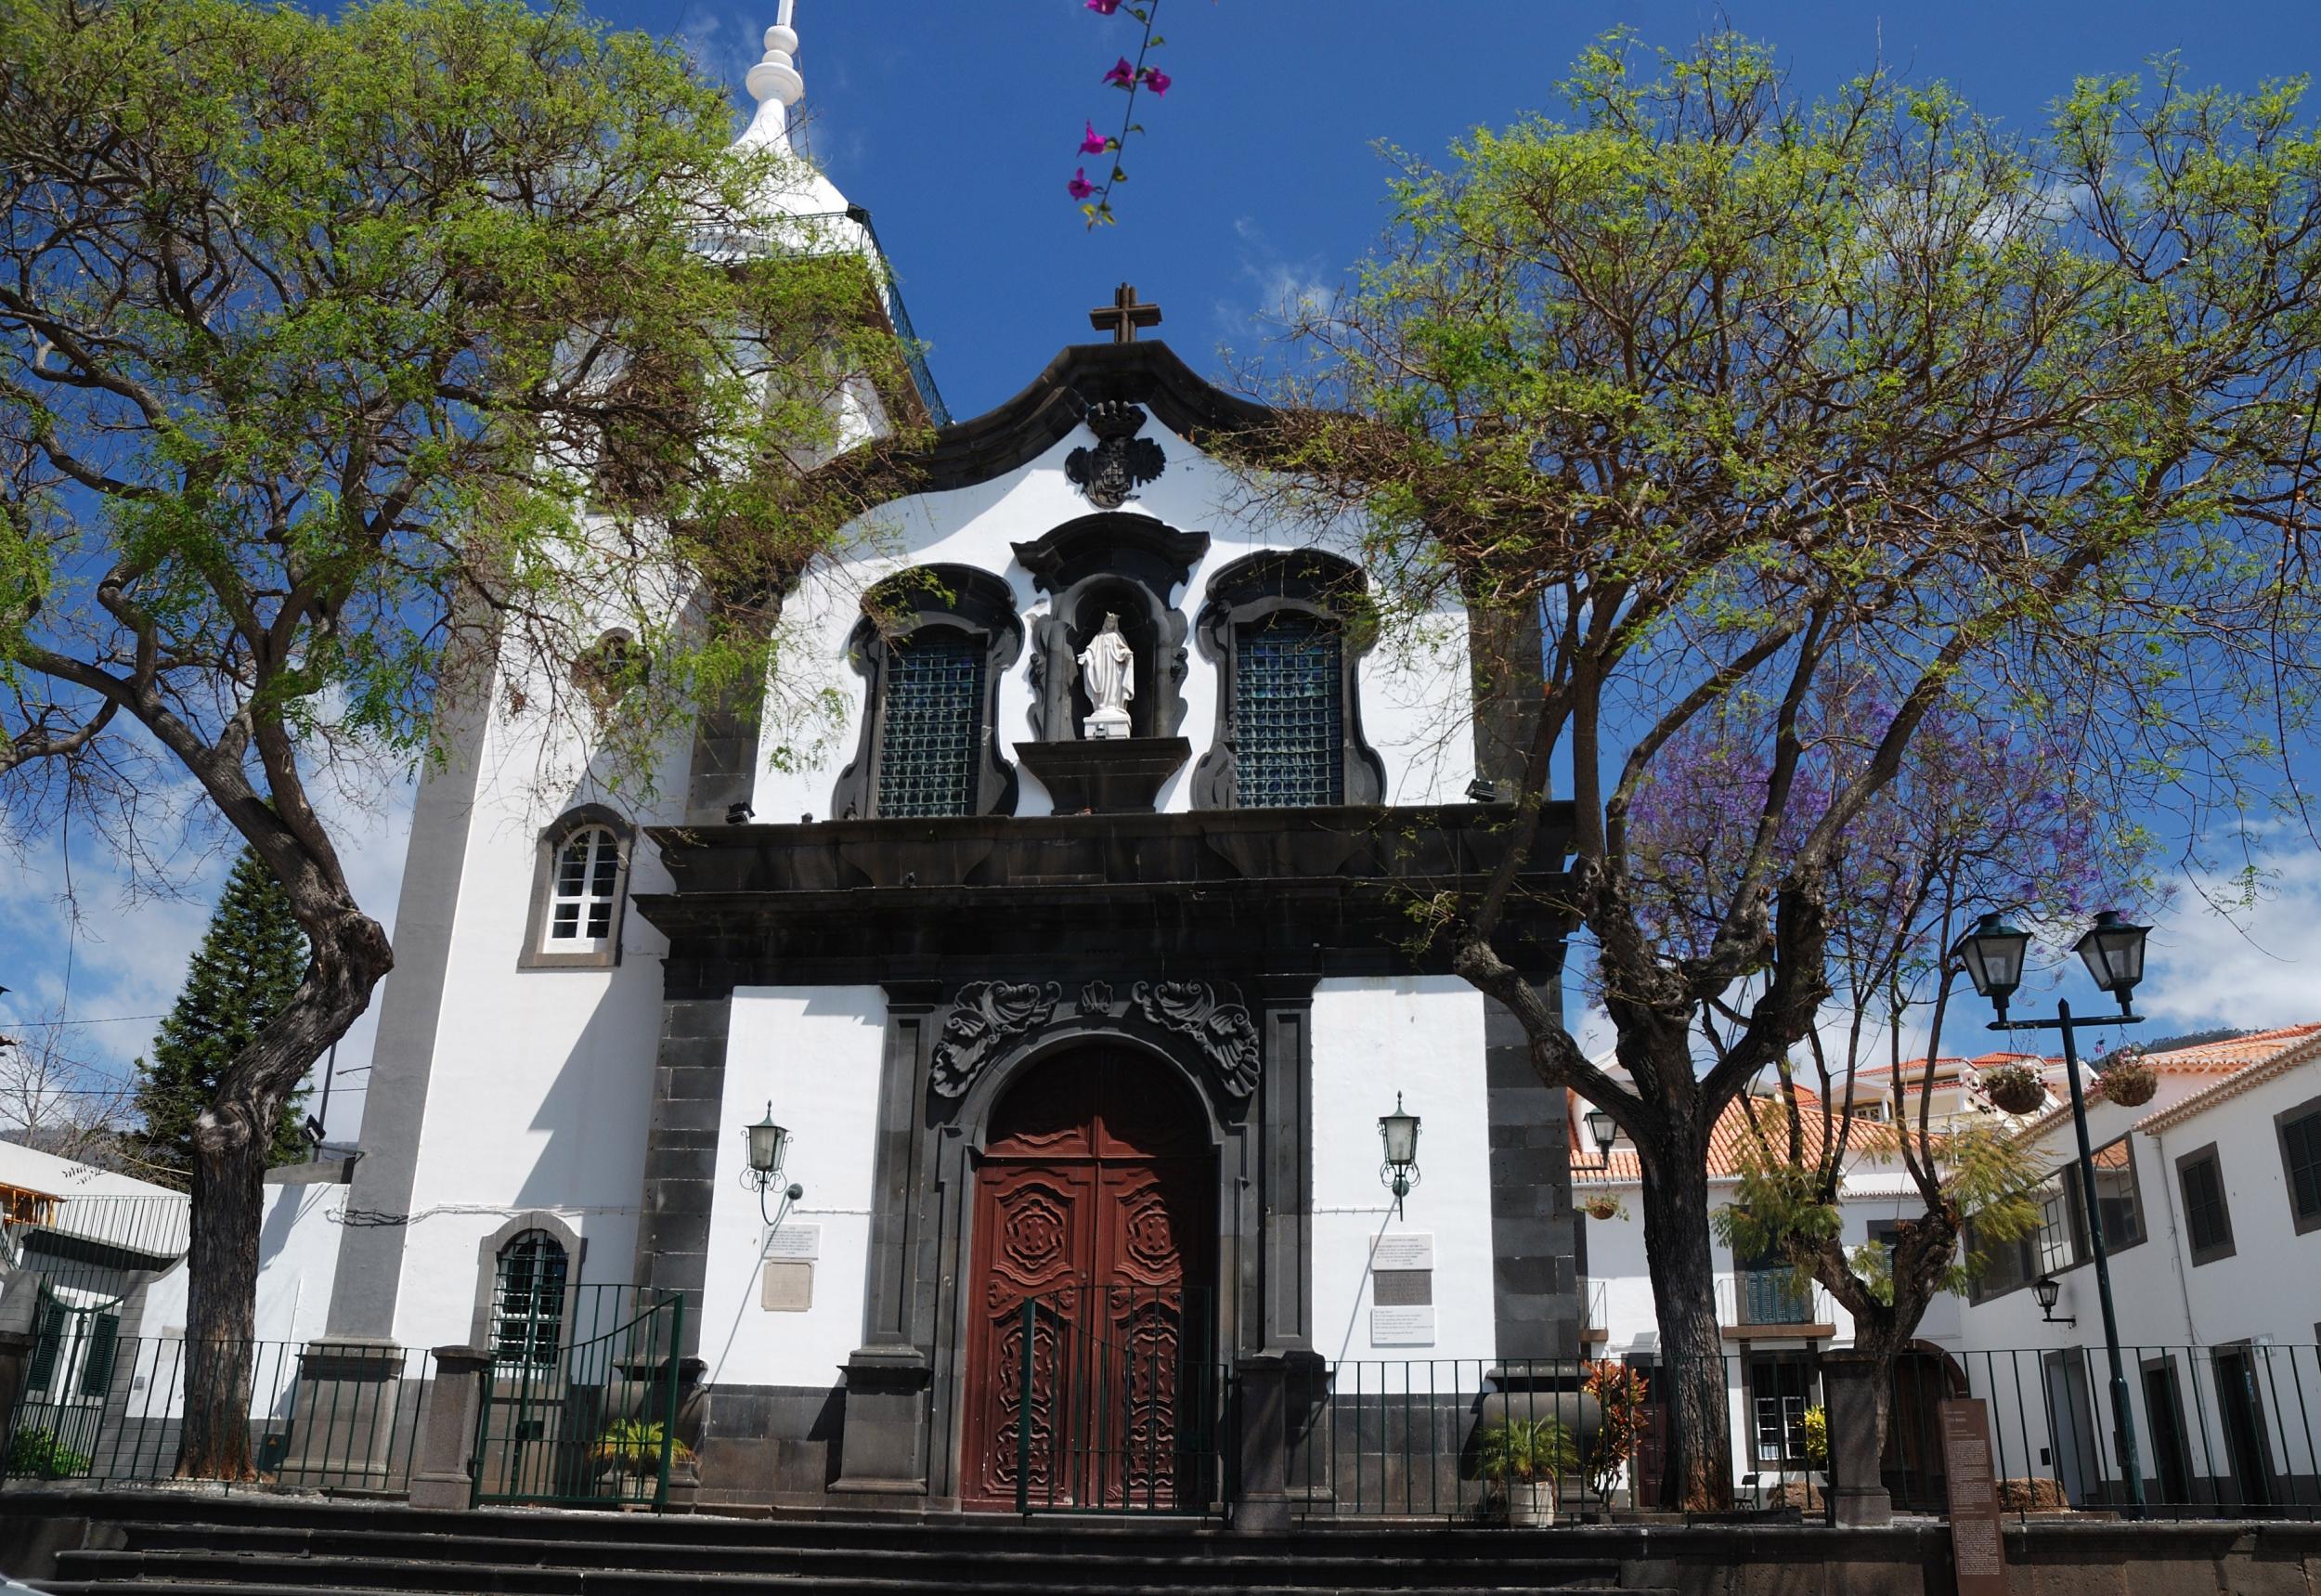 The Baroque facade of the Santa Maria Maior Church in Funchal